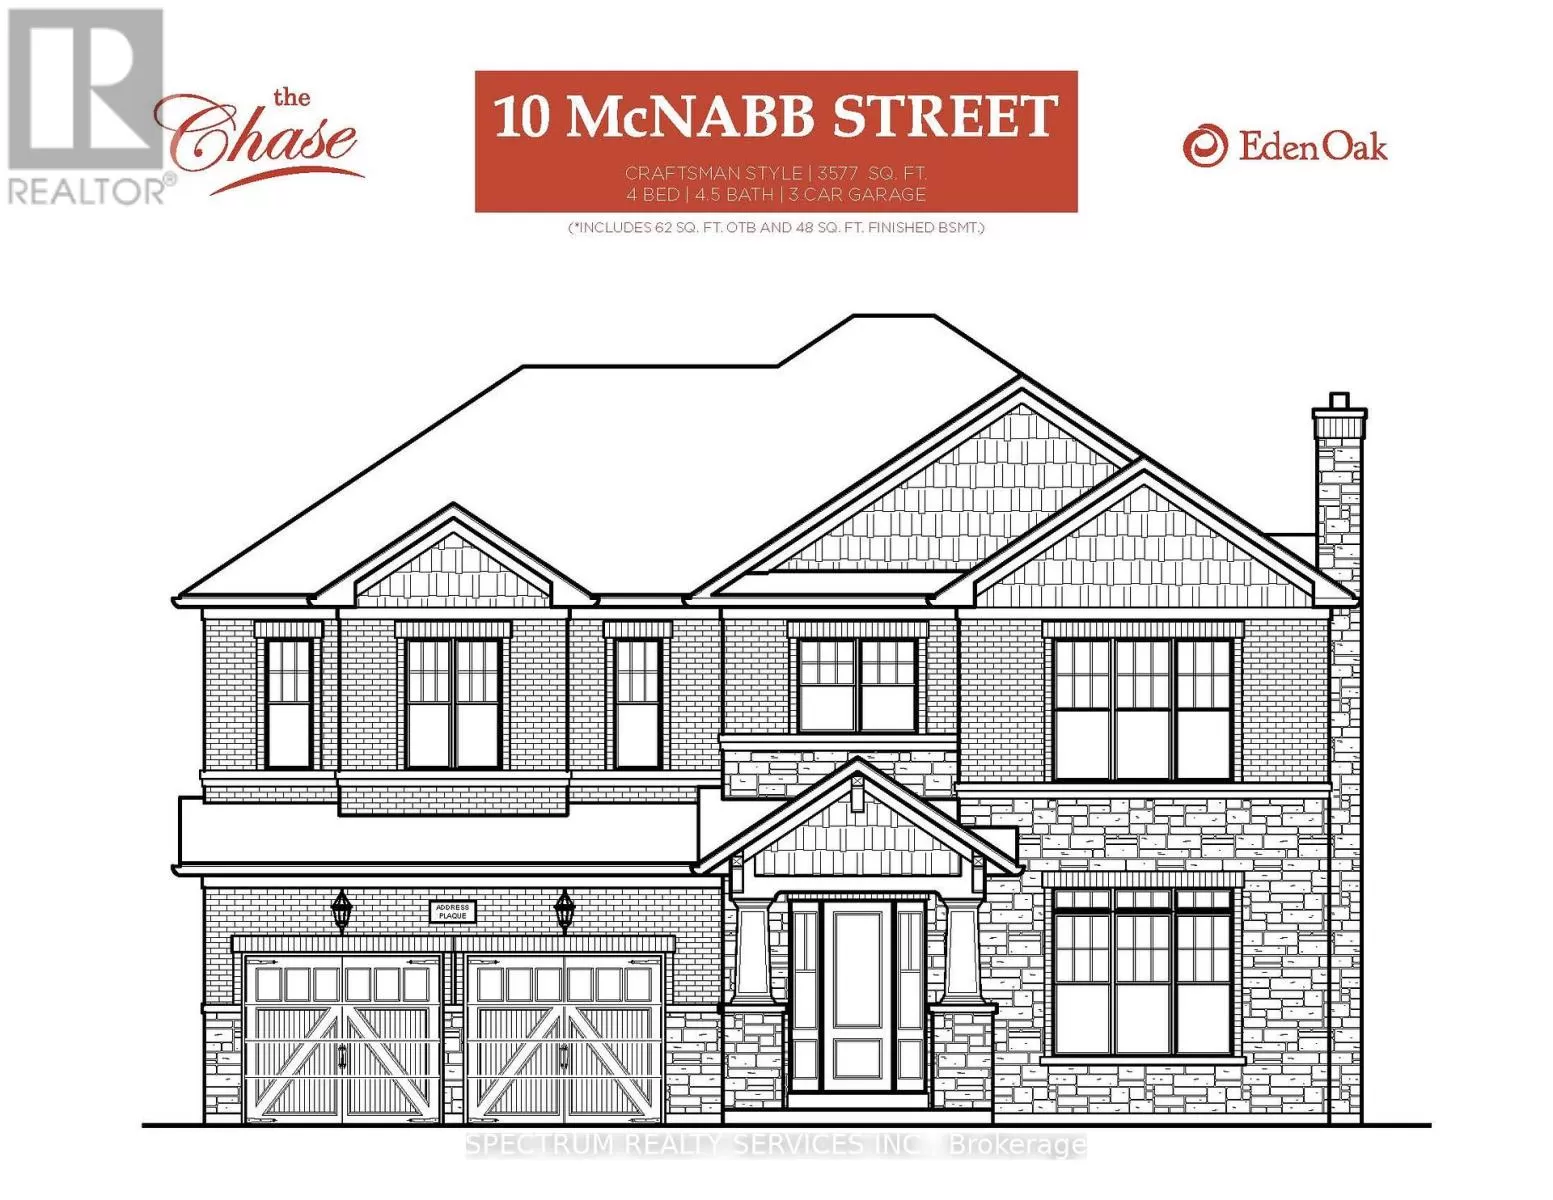 House for rent: 10 Mcnabb St, Halton Hills, Ontario L7G 2V4